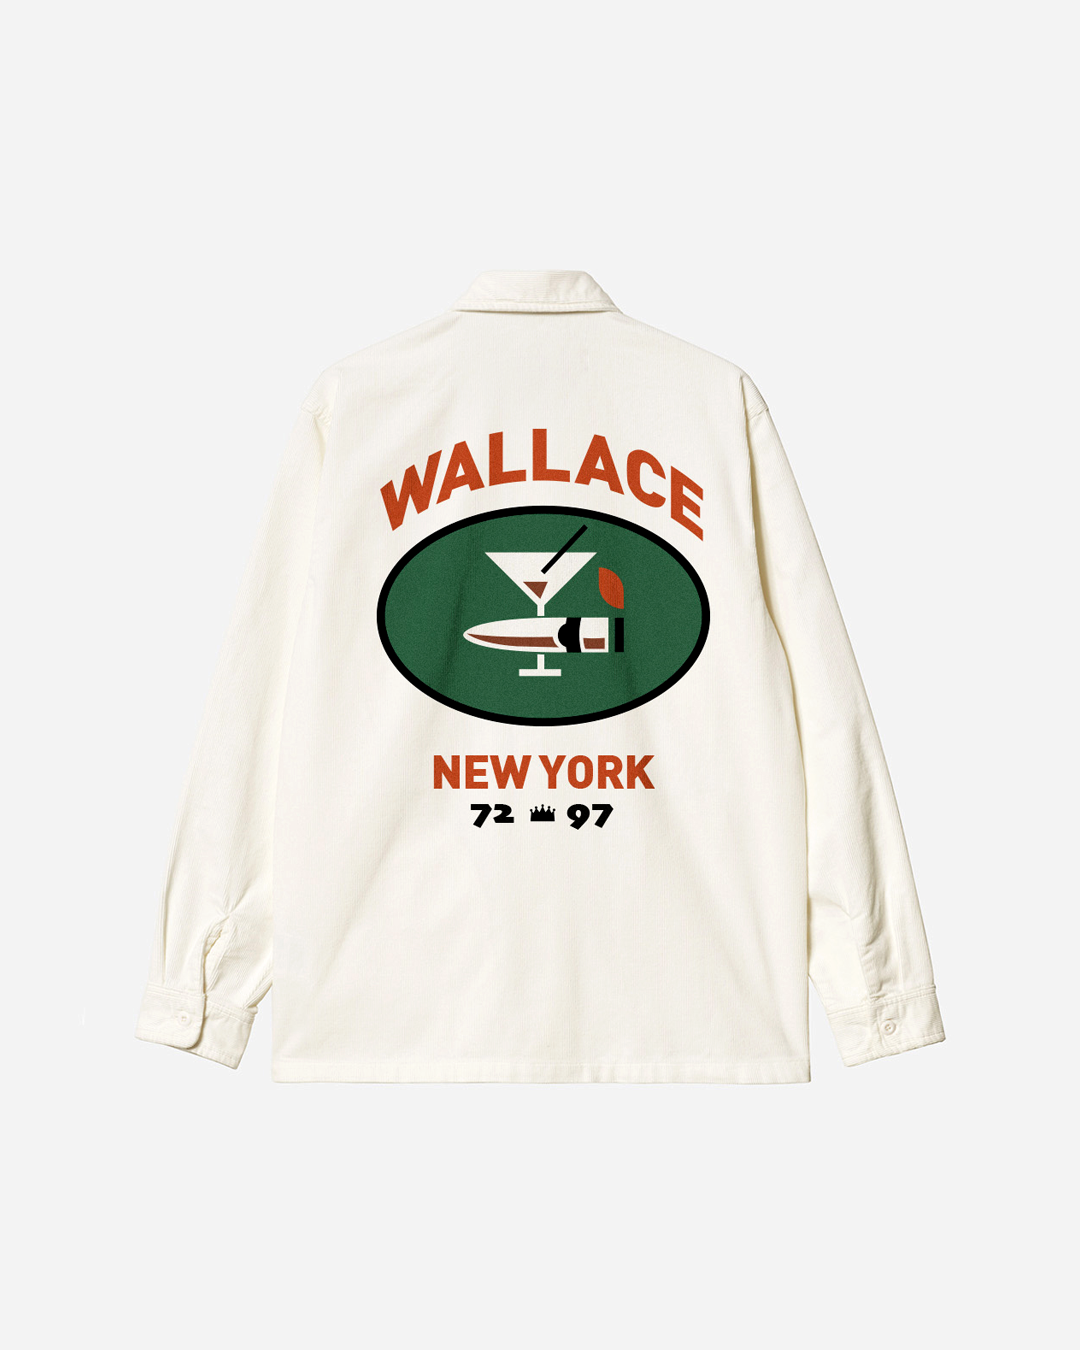 Wallace NY